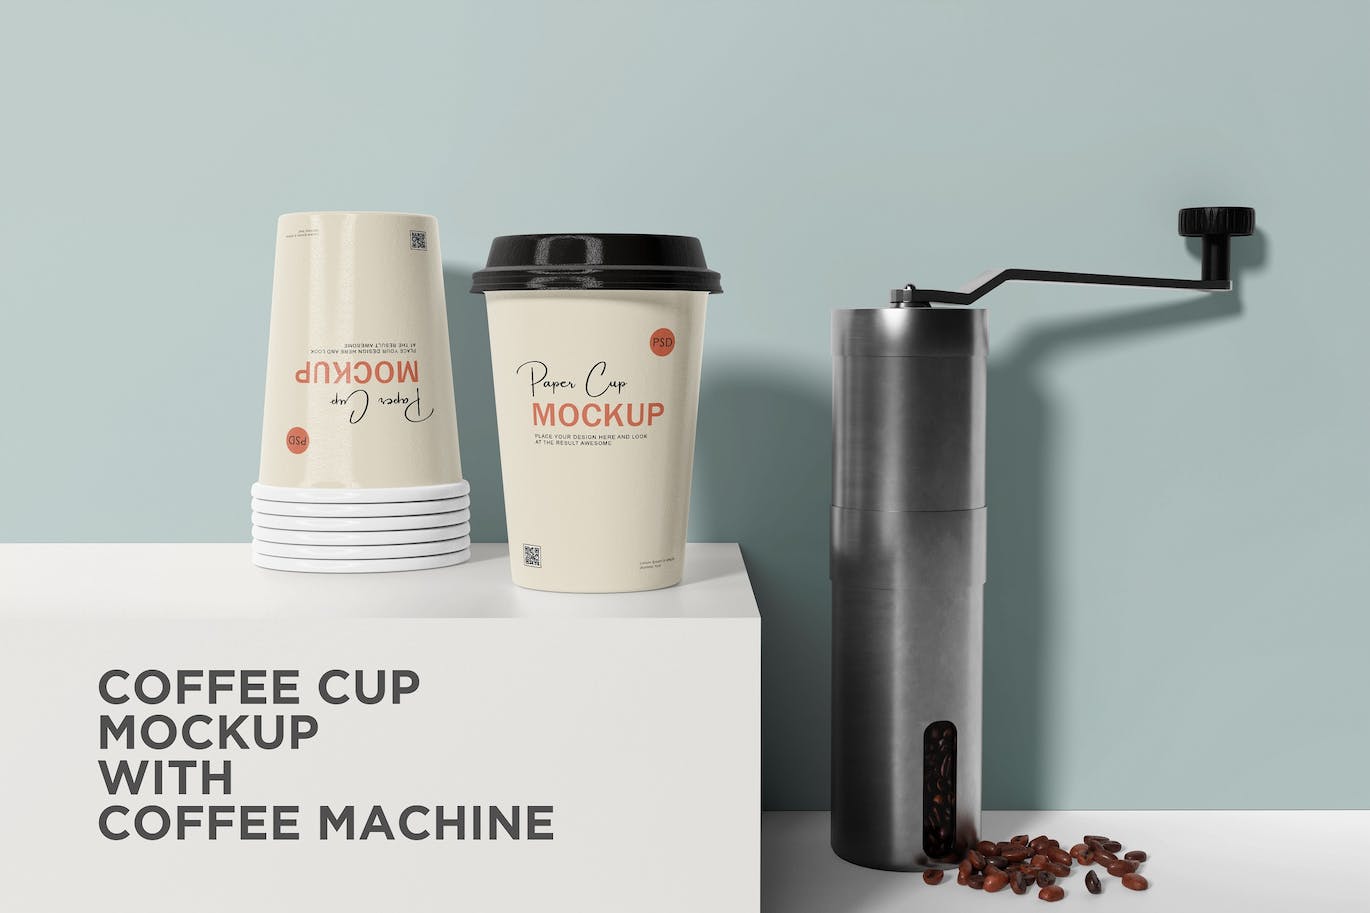 咖啡机咖啡杯包装设计样机 Coffee cup mockup with coffee machine 样机素材 第1张